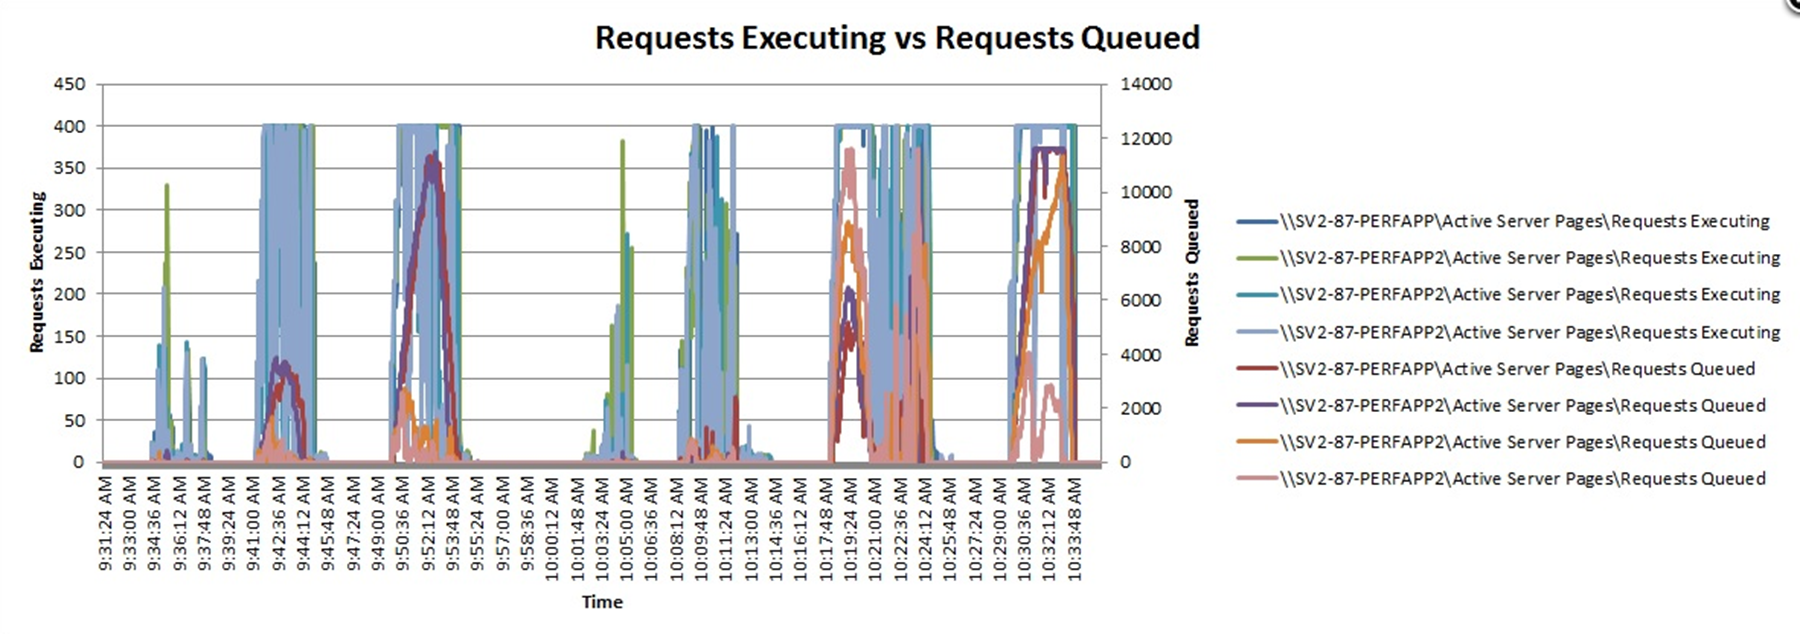 Application requests executing vs requests queued